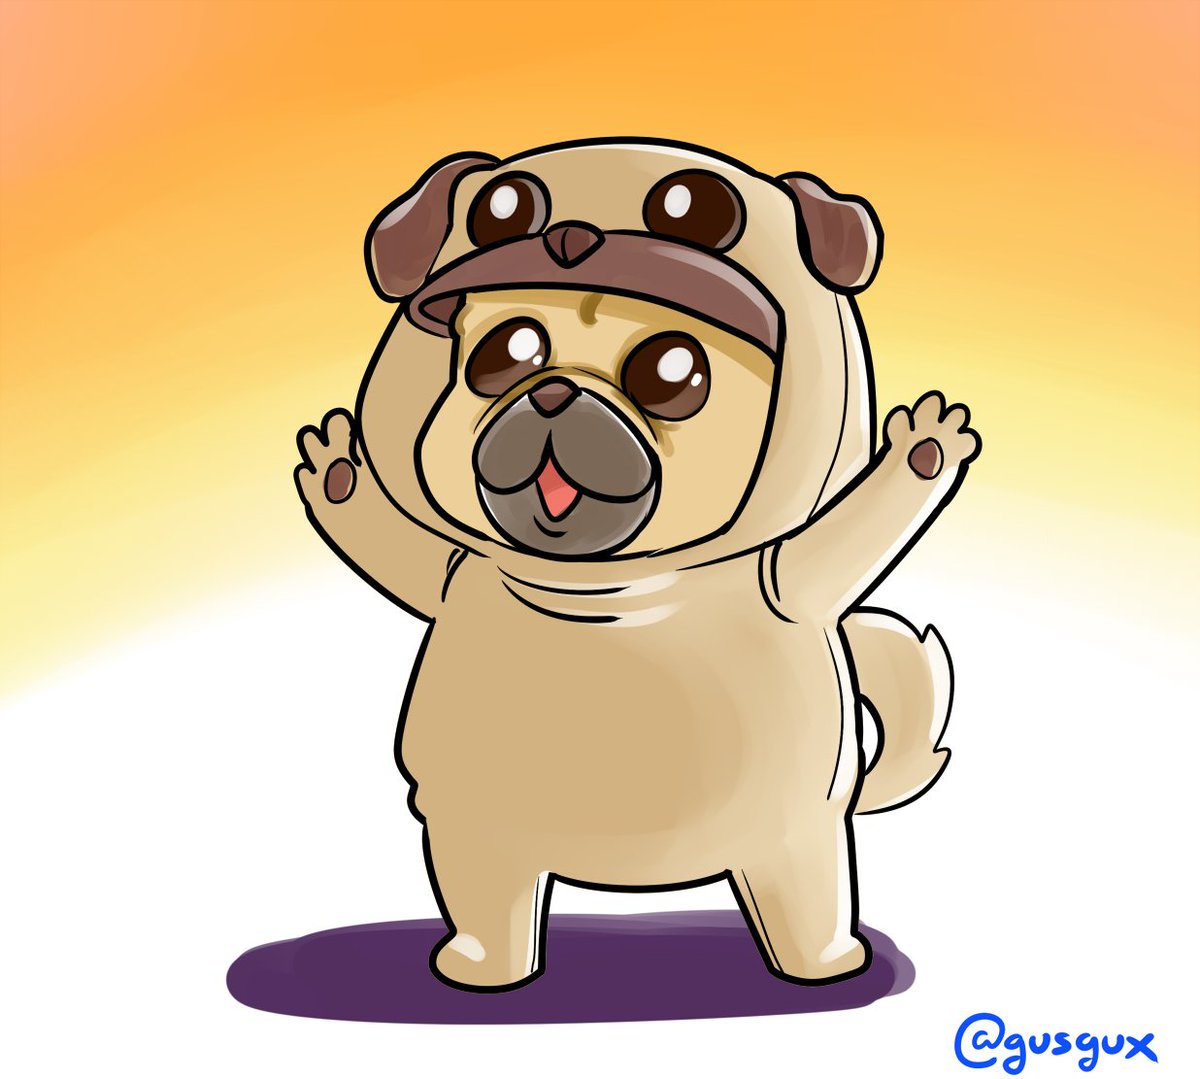 '@ElectroDonnan ¿Podría por favor dibujar a un Pug con disfraz de Pug por favor señor don Garabujante? 🙏🏼' :) #HoraDeLosGarabujos